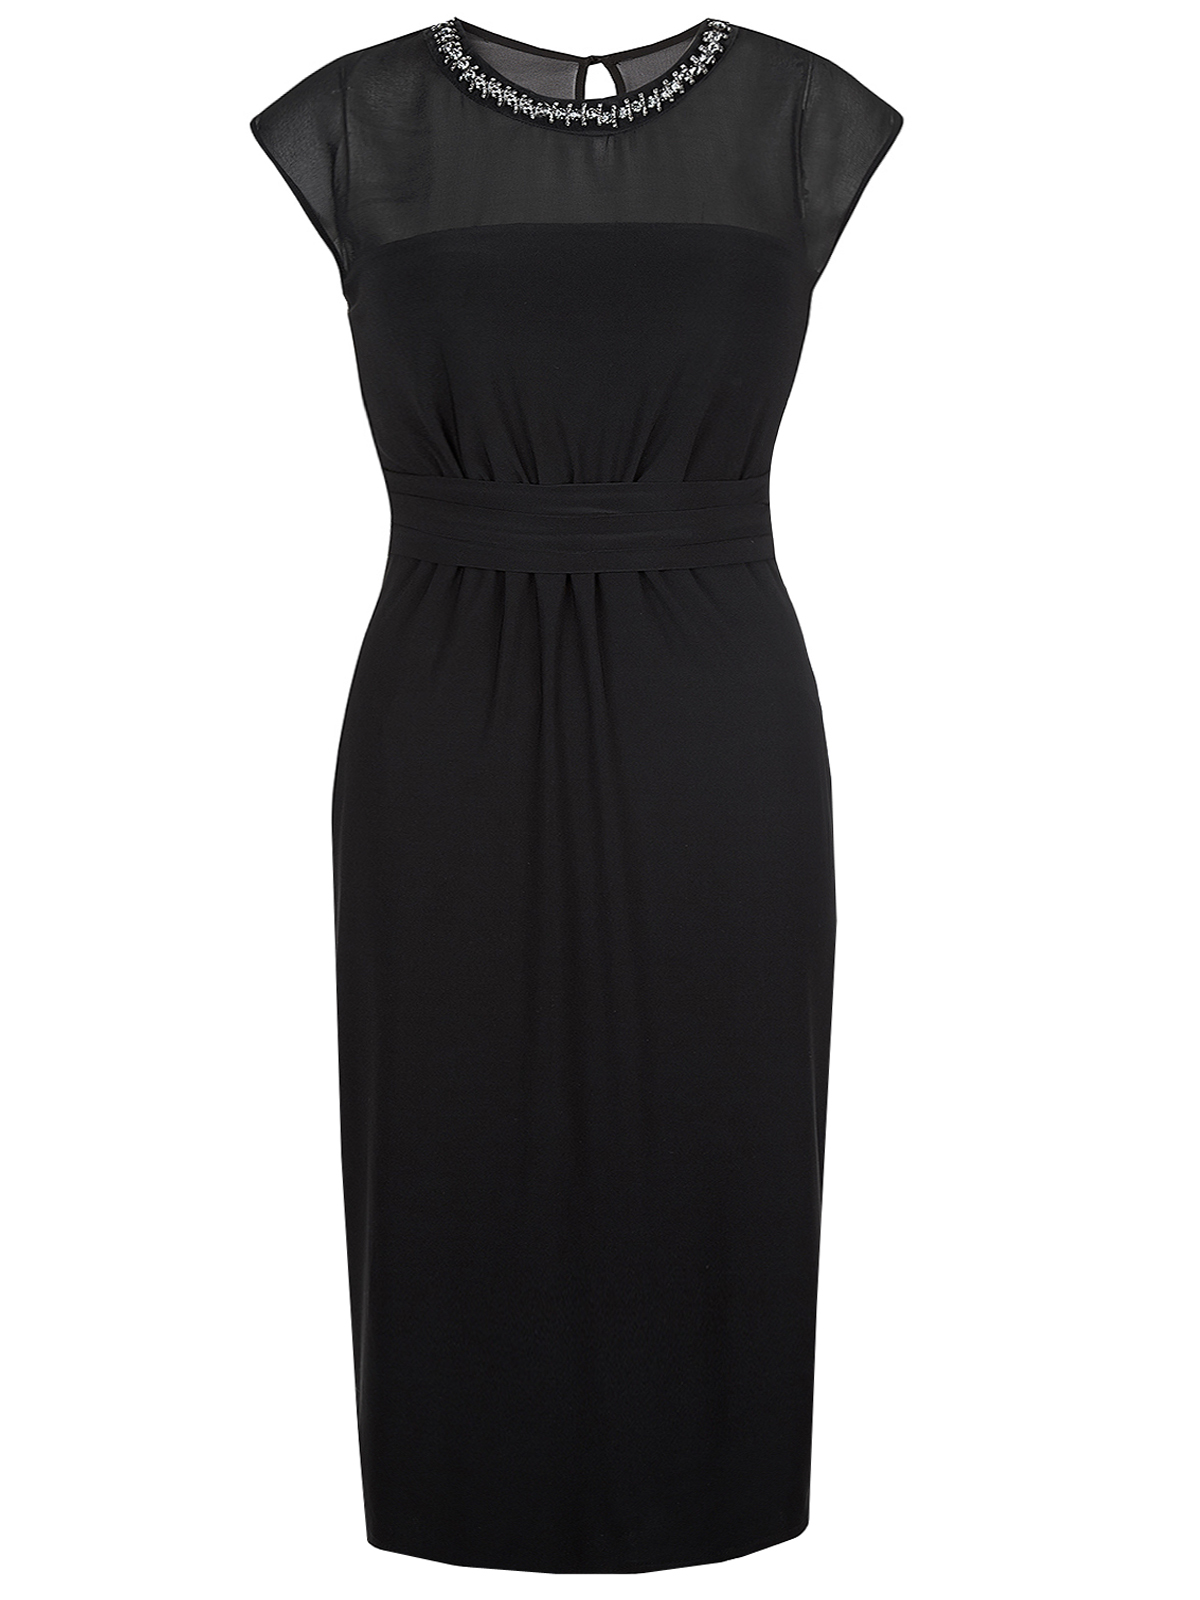 M0nsoon BLACK Serena Sleeveless Embellished Dress - Size 10 to 20